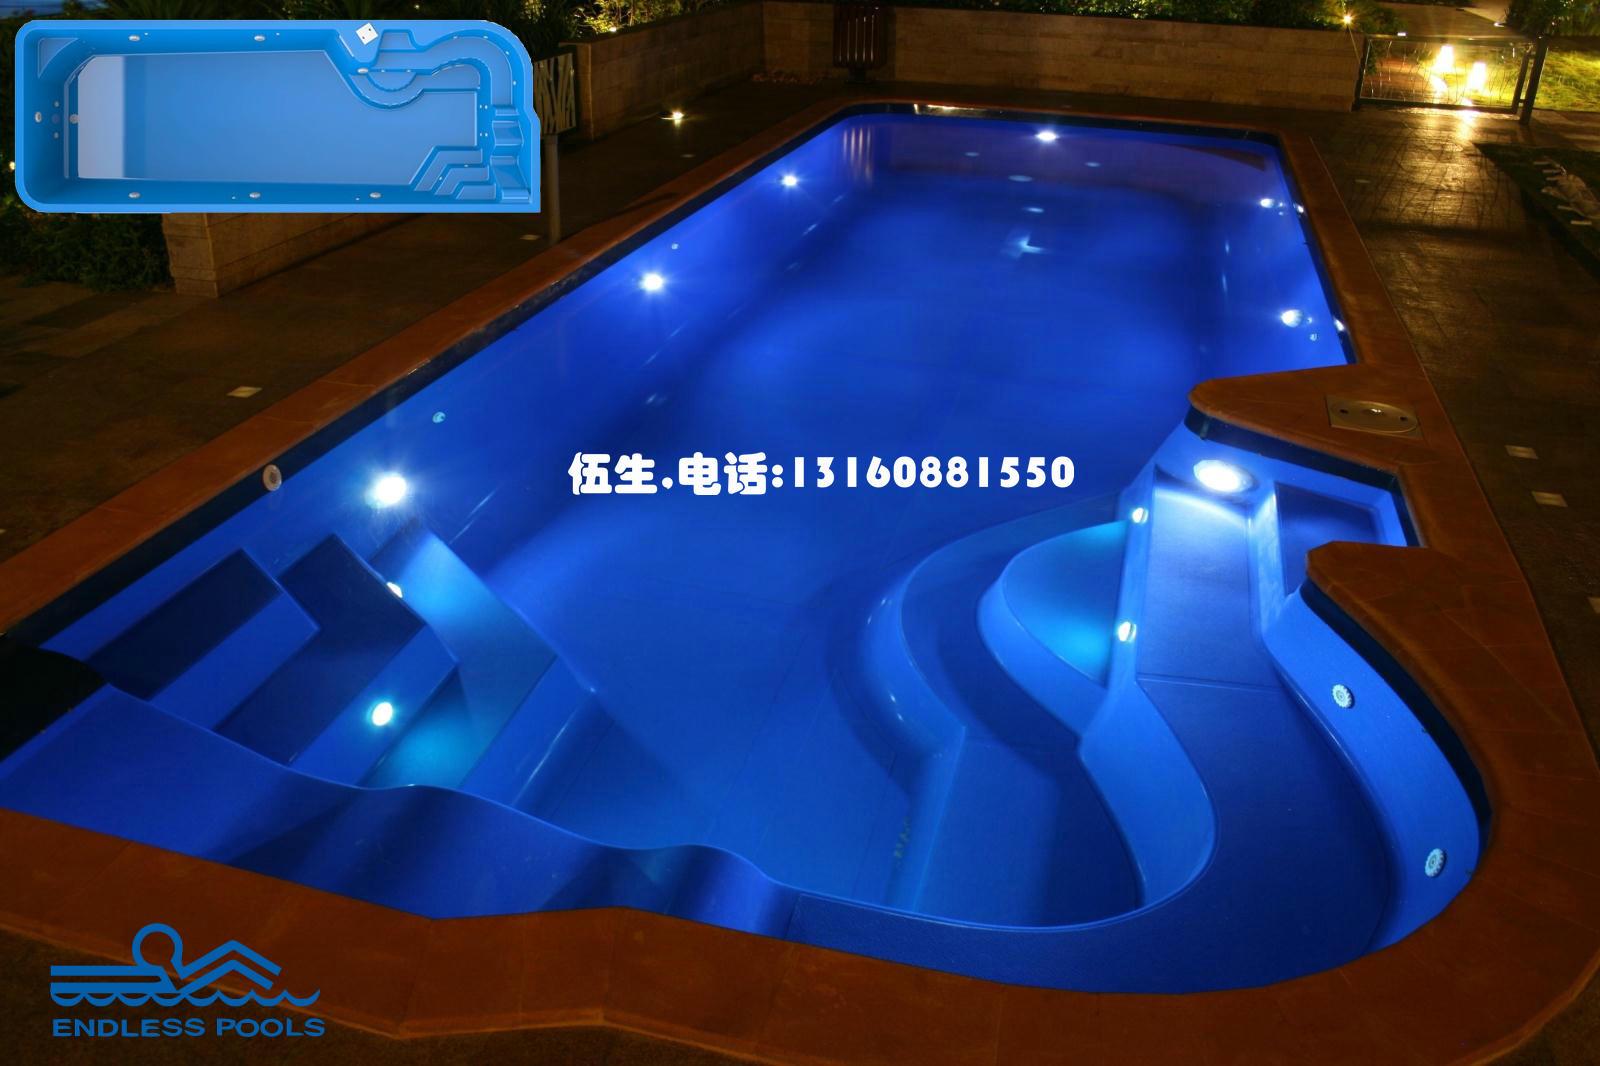 7天建造恩德莱斯ENDLESS POOLS私人泳池  玻璃纤维游泳池